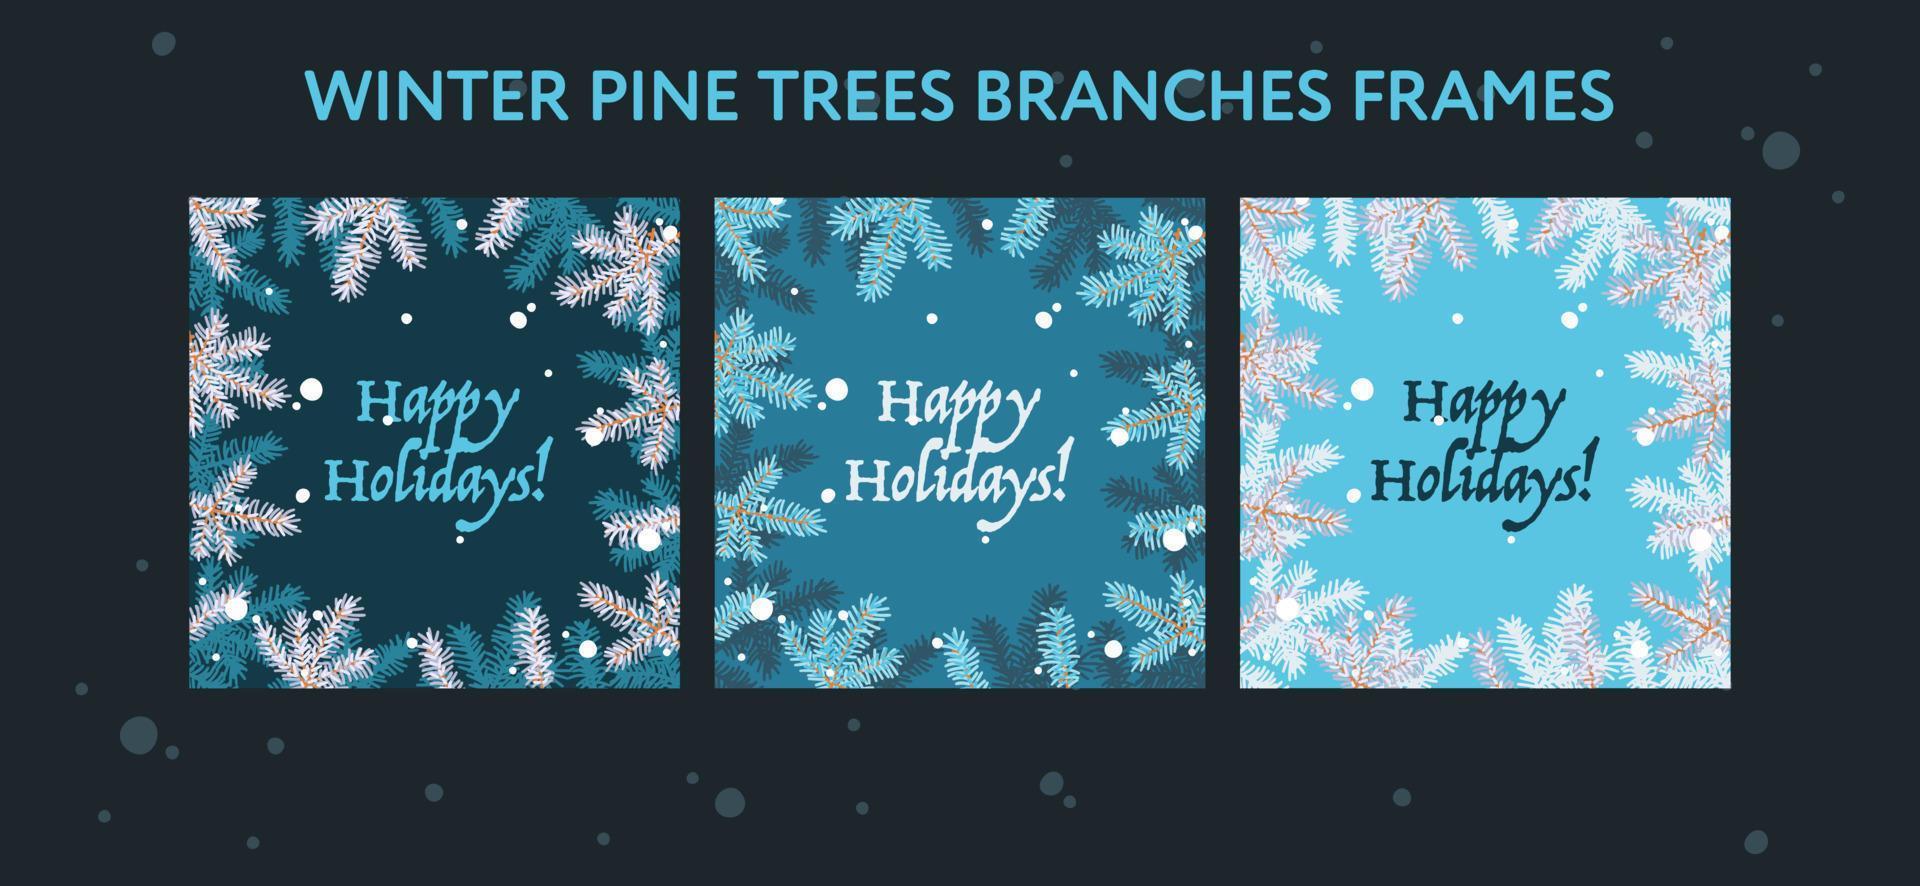 ensemble de cadres de vacances de noël avec texte de joyeuses fêtes, vecteur eps. ensemble d'affiches créatives montrant des branches de pins sur fond bleu.